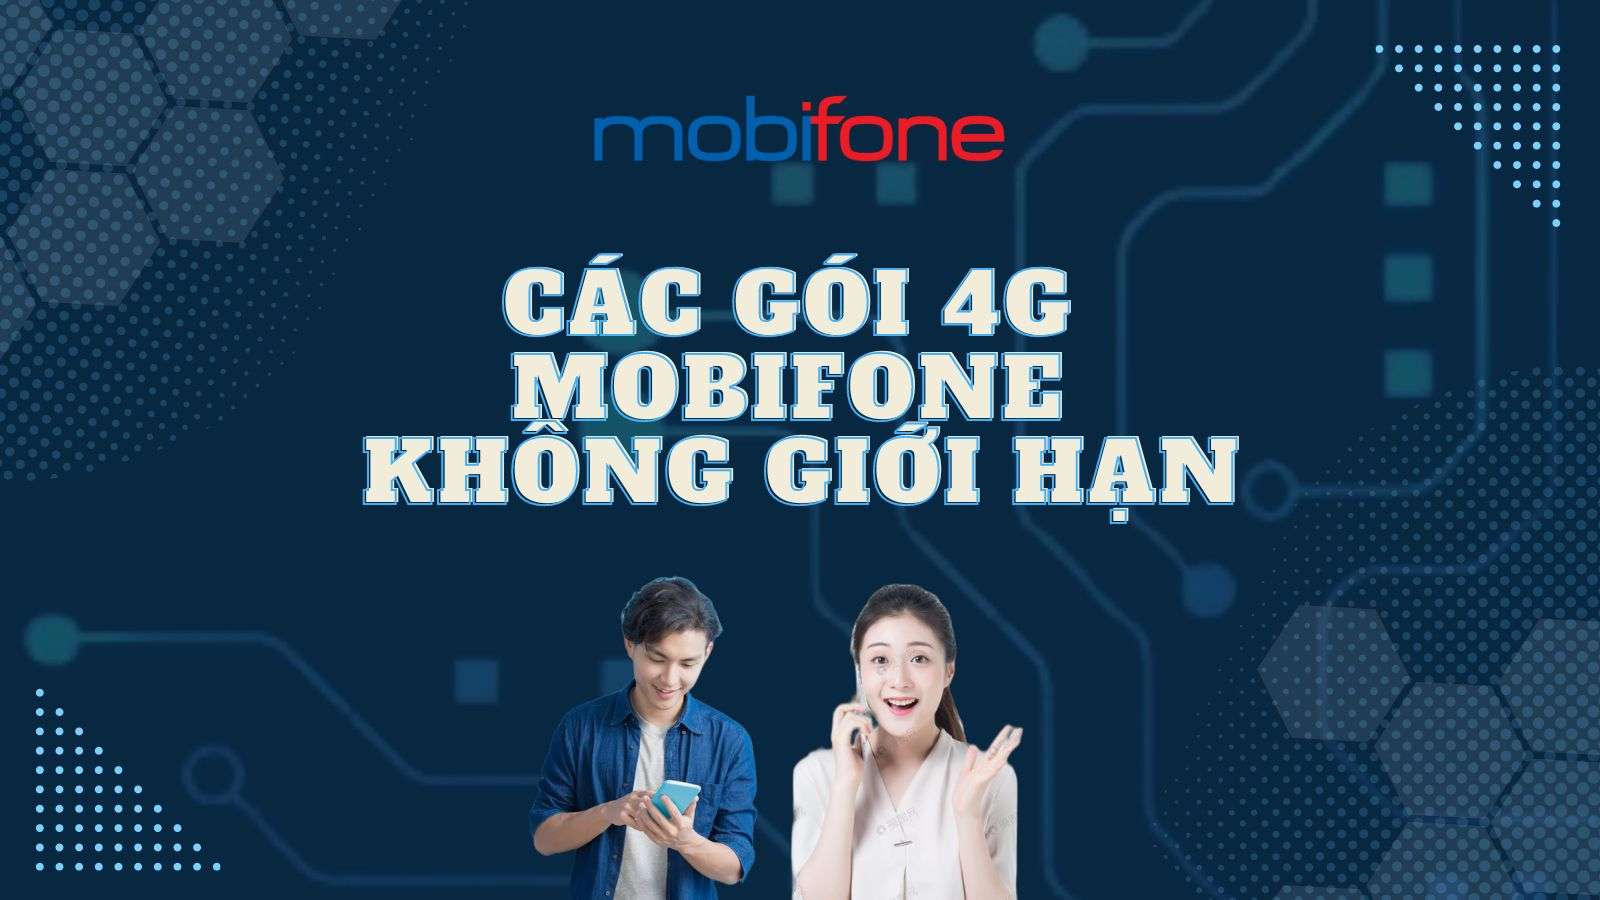 MobiFone: Chọn gói buffet data - Vô tư lướt mạng xã hội cả tháng chỉ 10k Goi-cuoc-4g-mobifone-khong-gioi-han-1